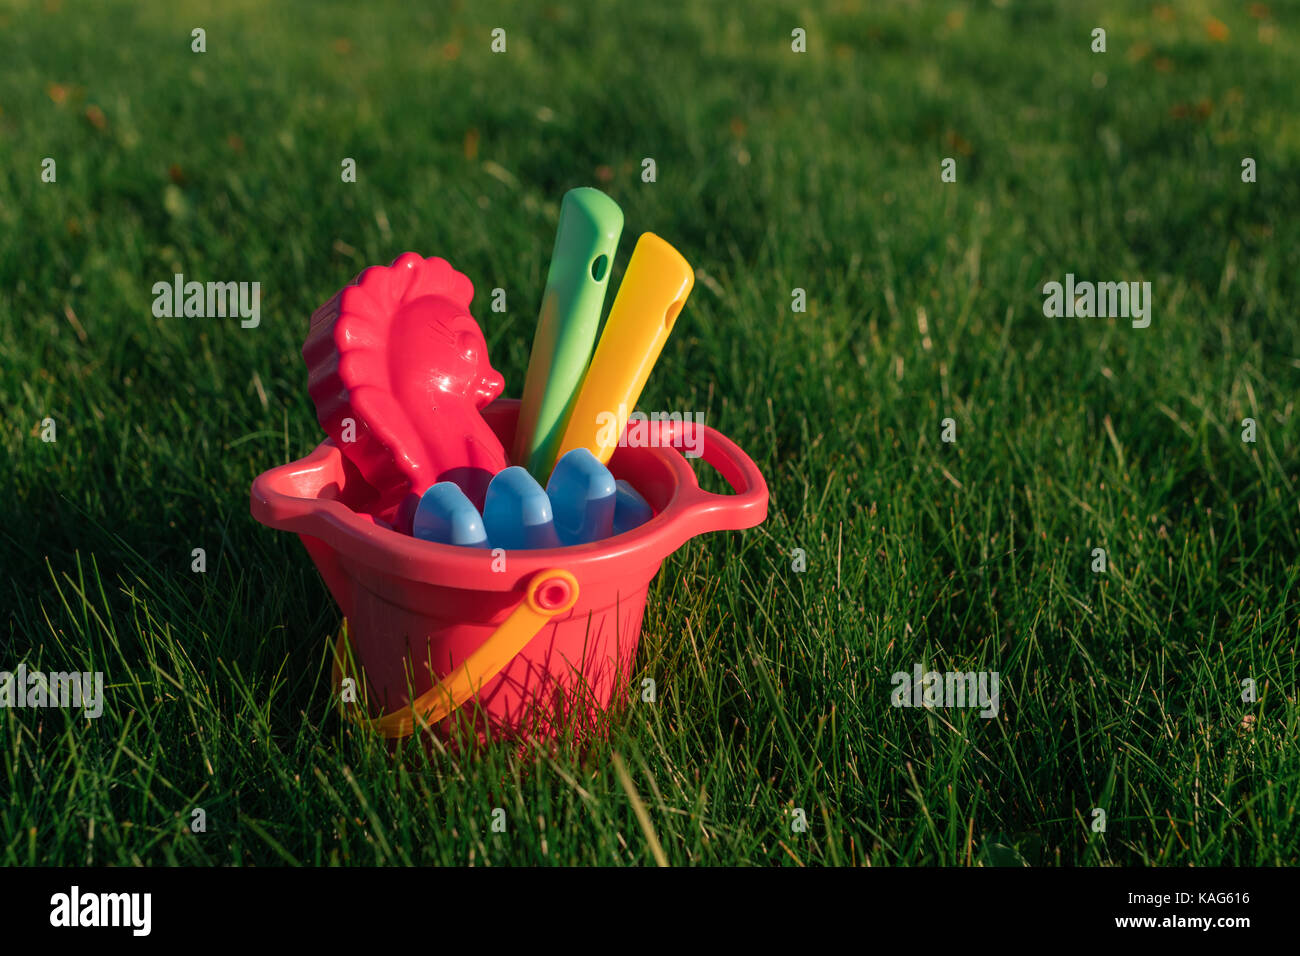 Bunte Spielzeug der Kinder in einem Eimer auf einer grünen Wiese. Stockfoto